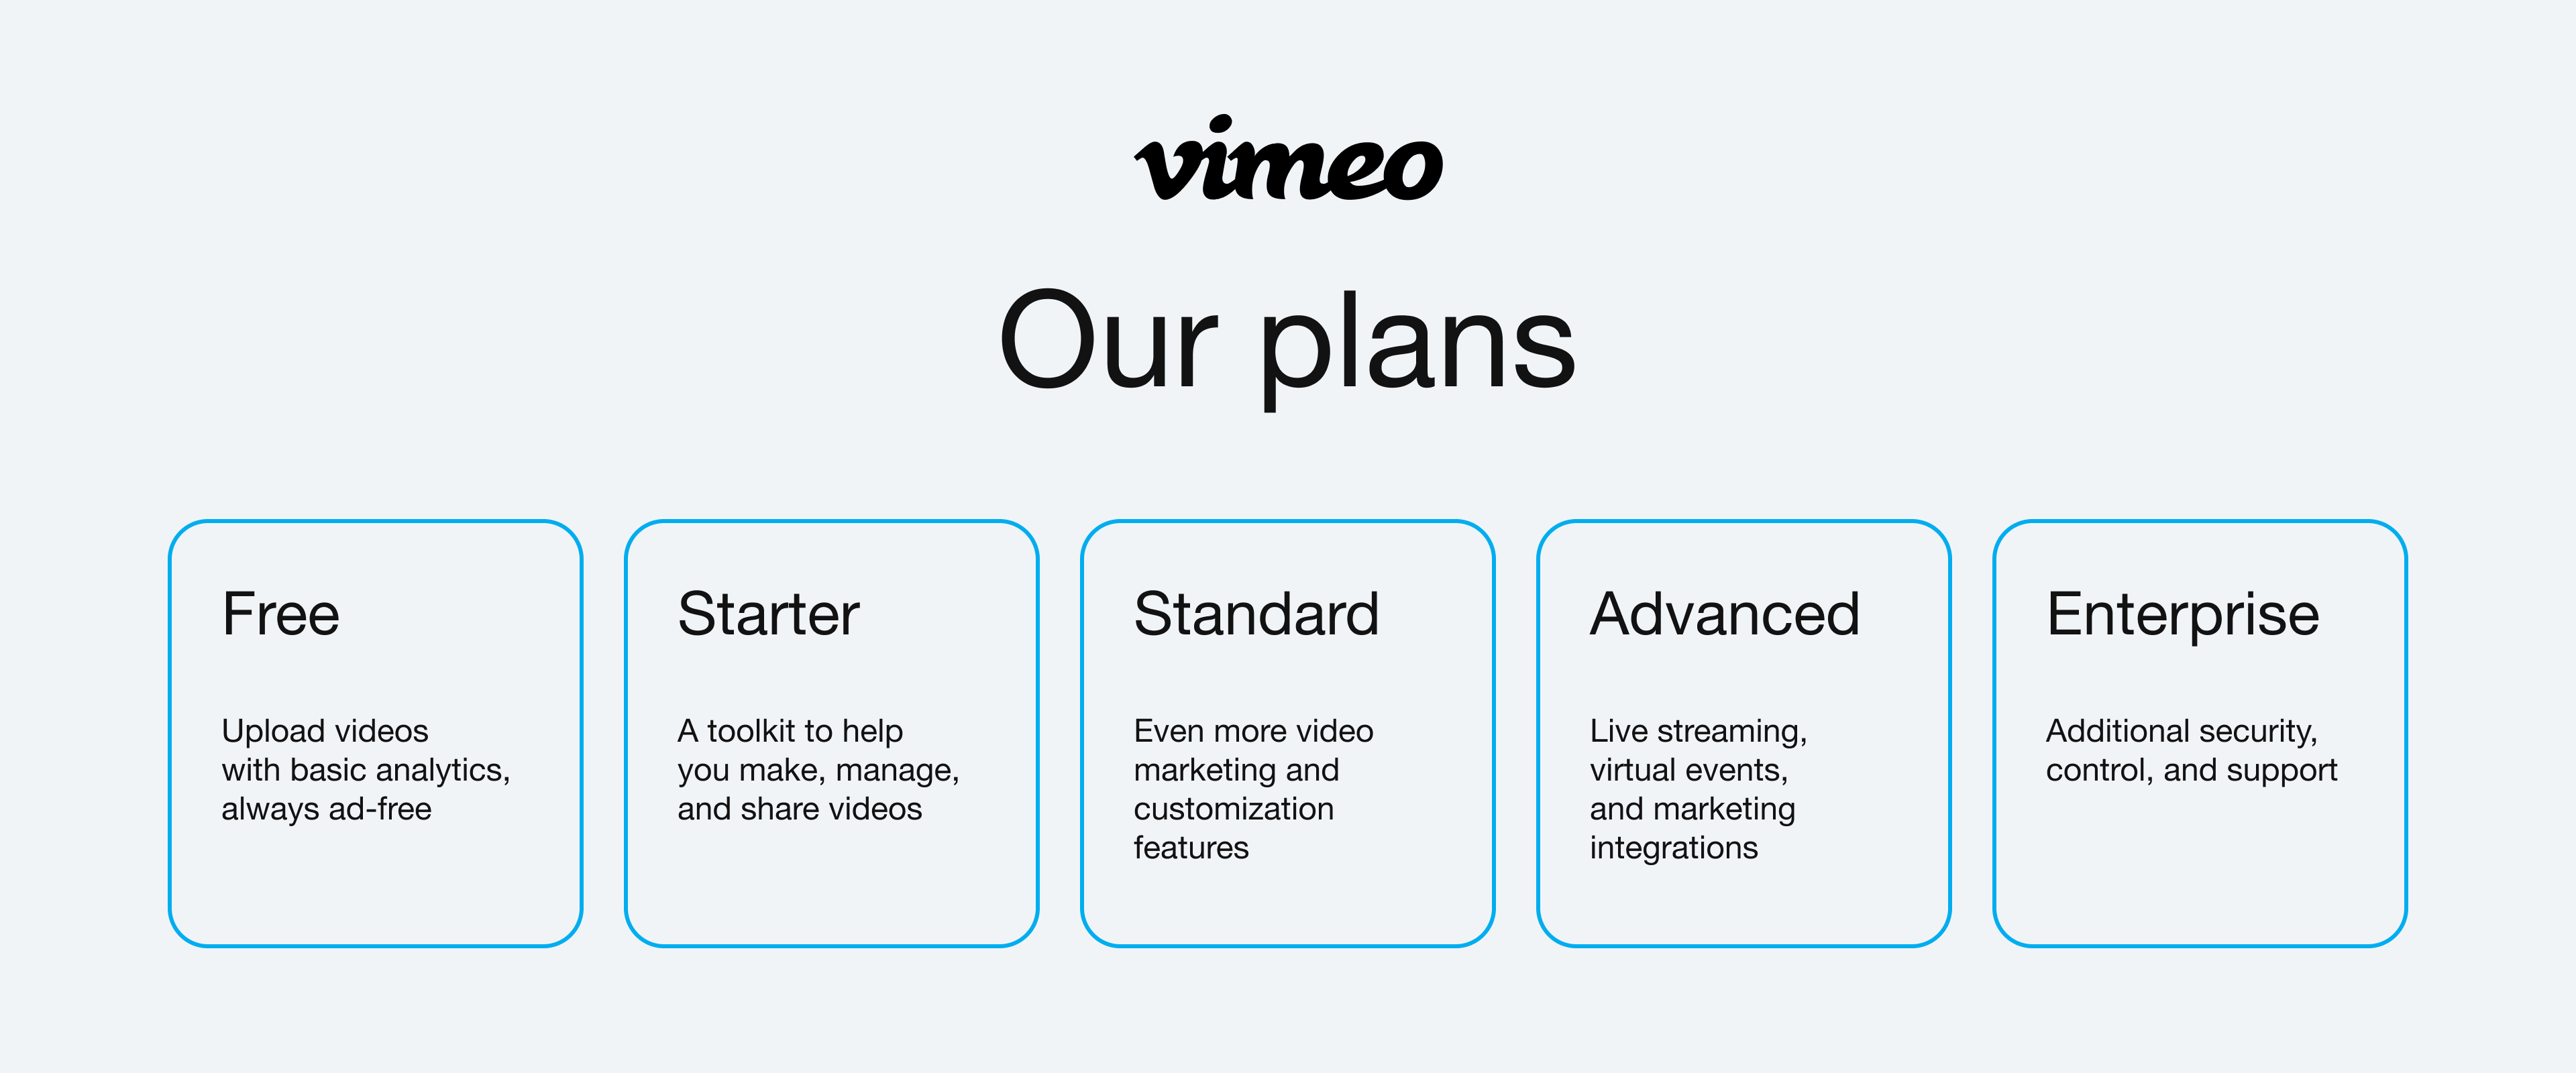 A breakdown of Vimeo plans